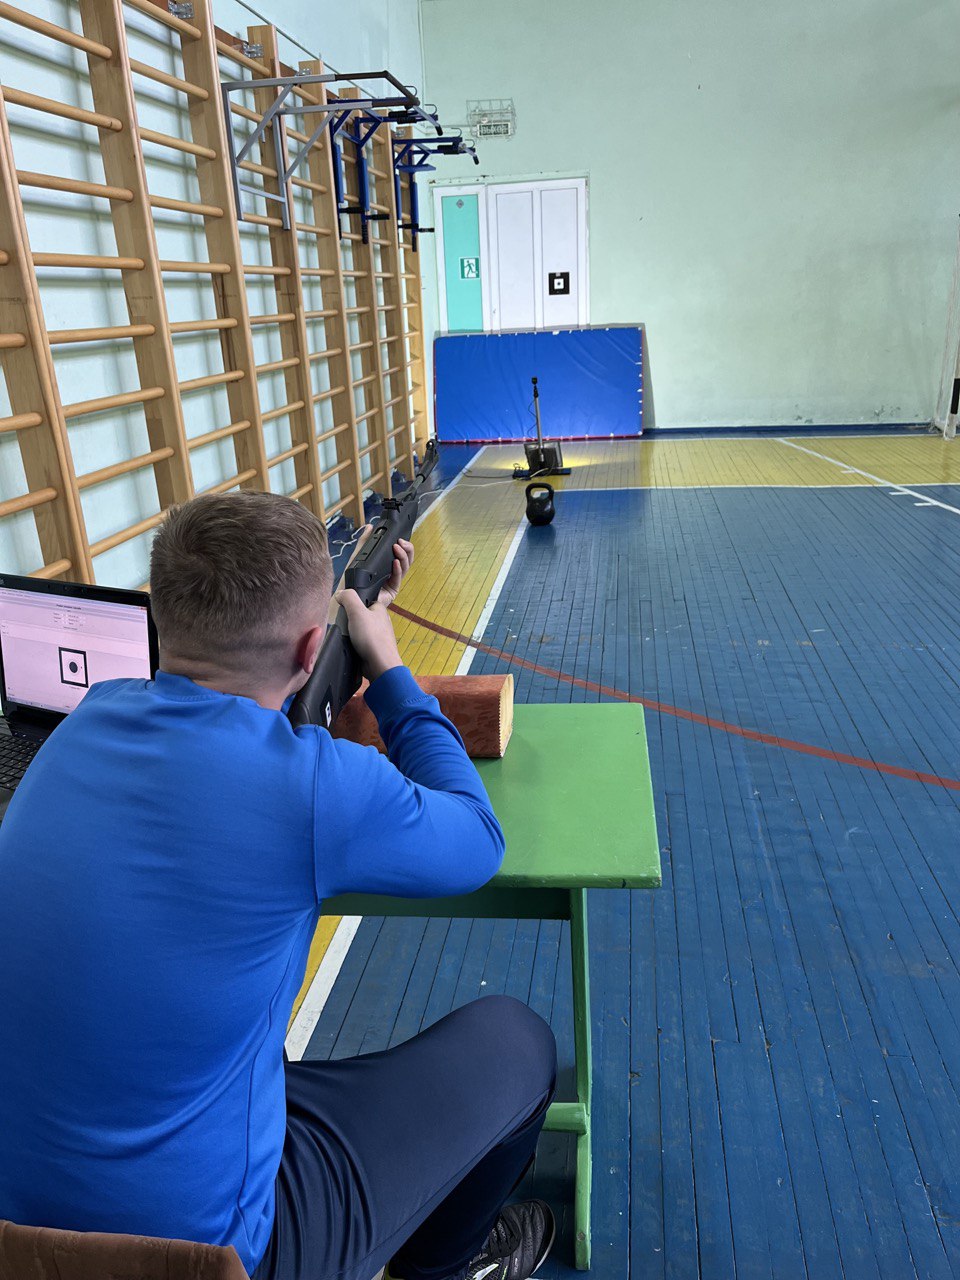 Всероссийский физкультурно-спортивный комплекс «Готов к труду и обороне»